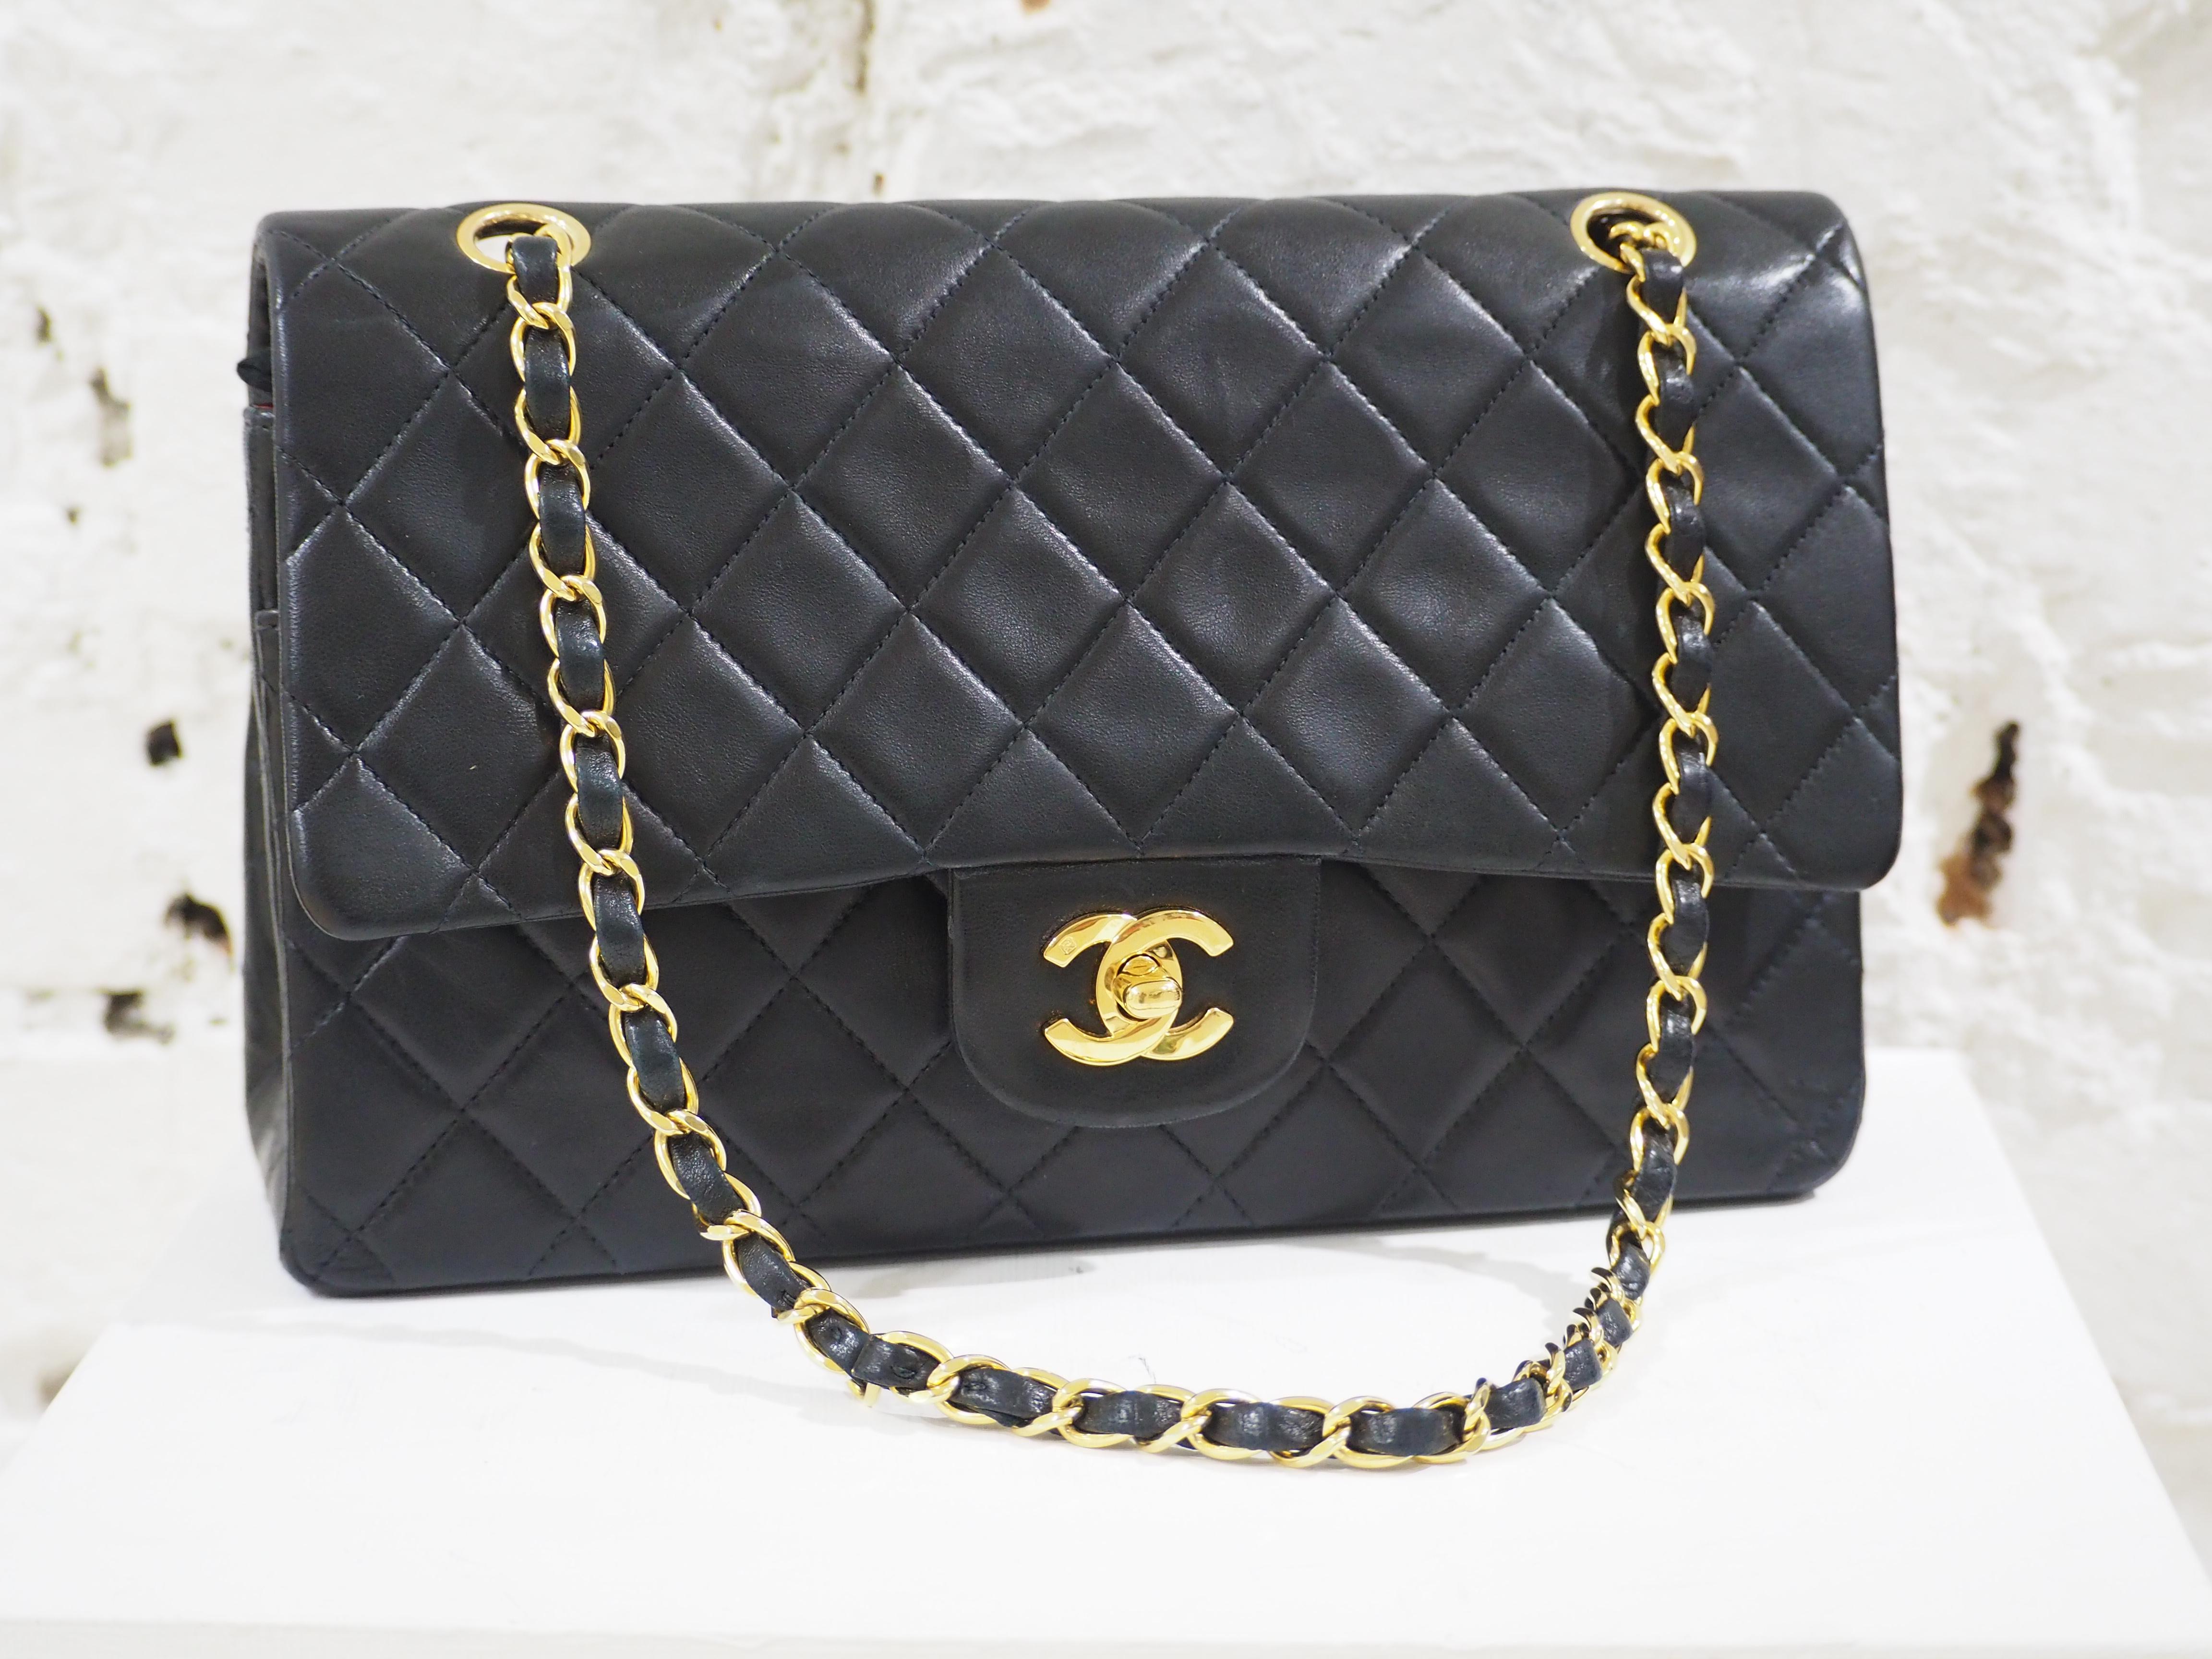 Chanel 2.55 black leather shoulder bag 4